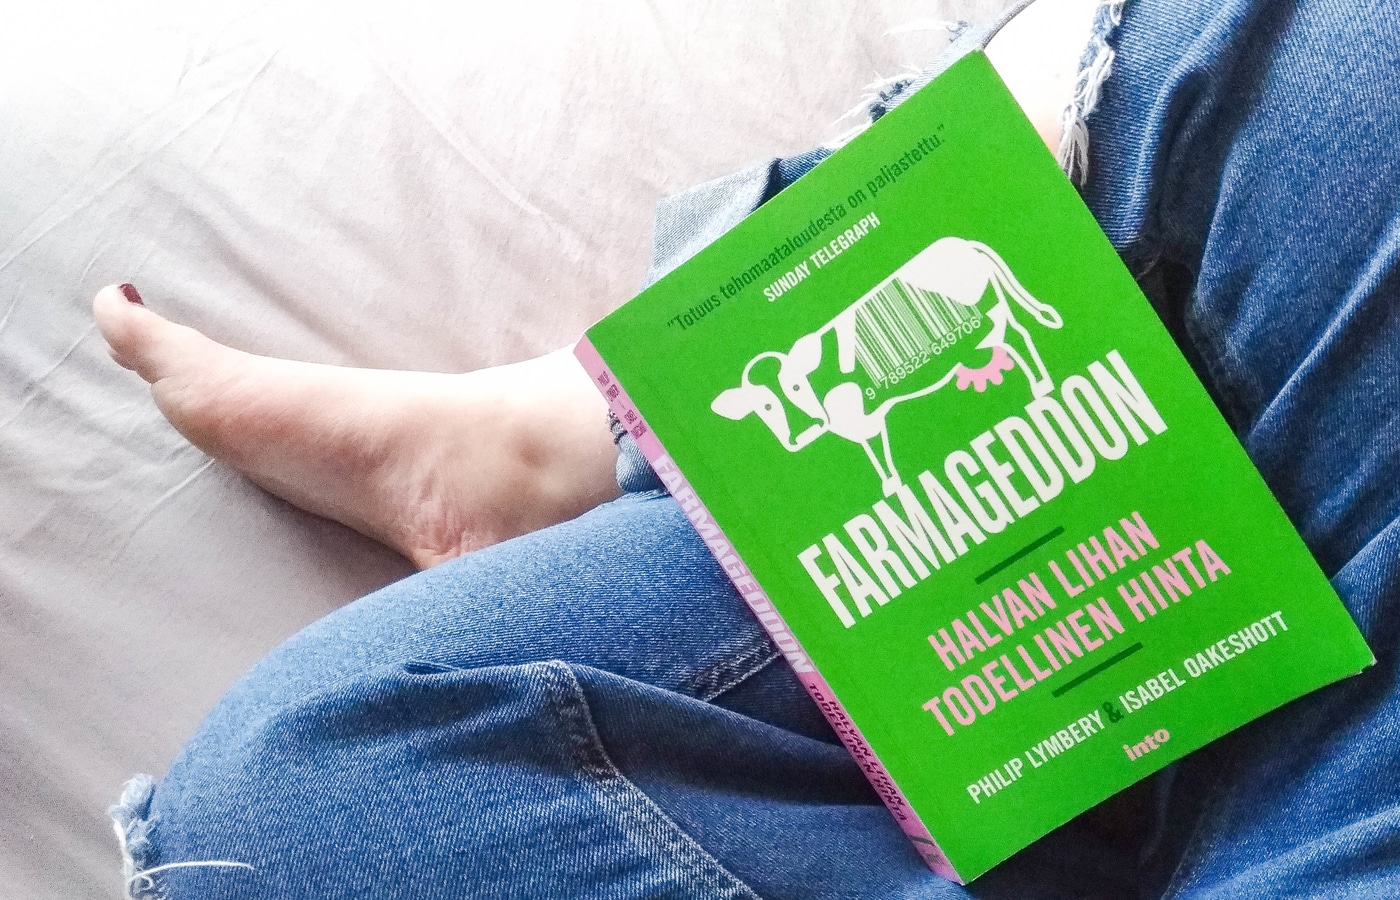 Farmageddon halvan lihan todellinen hinta – kirja-arvostelu